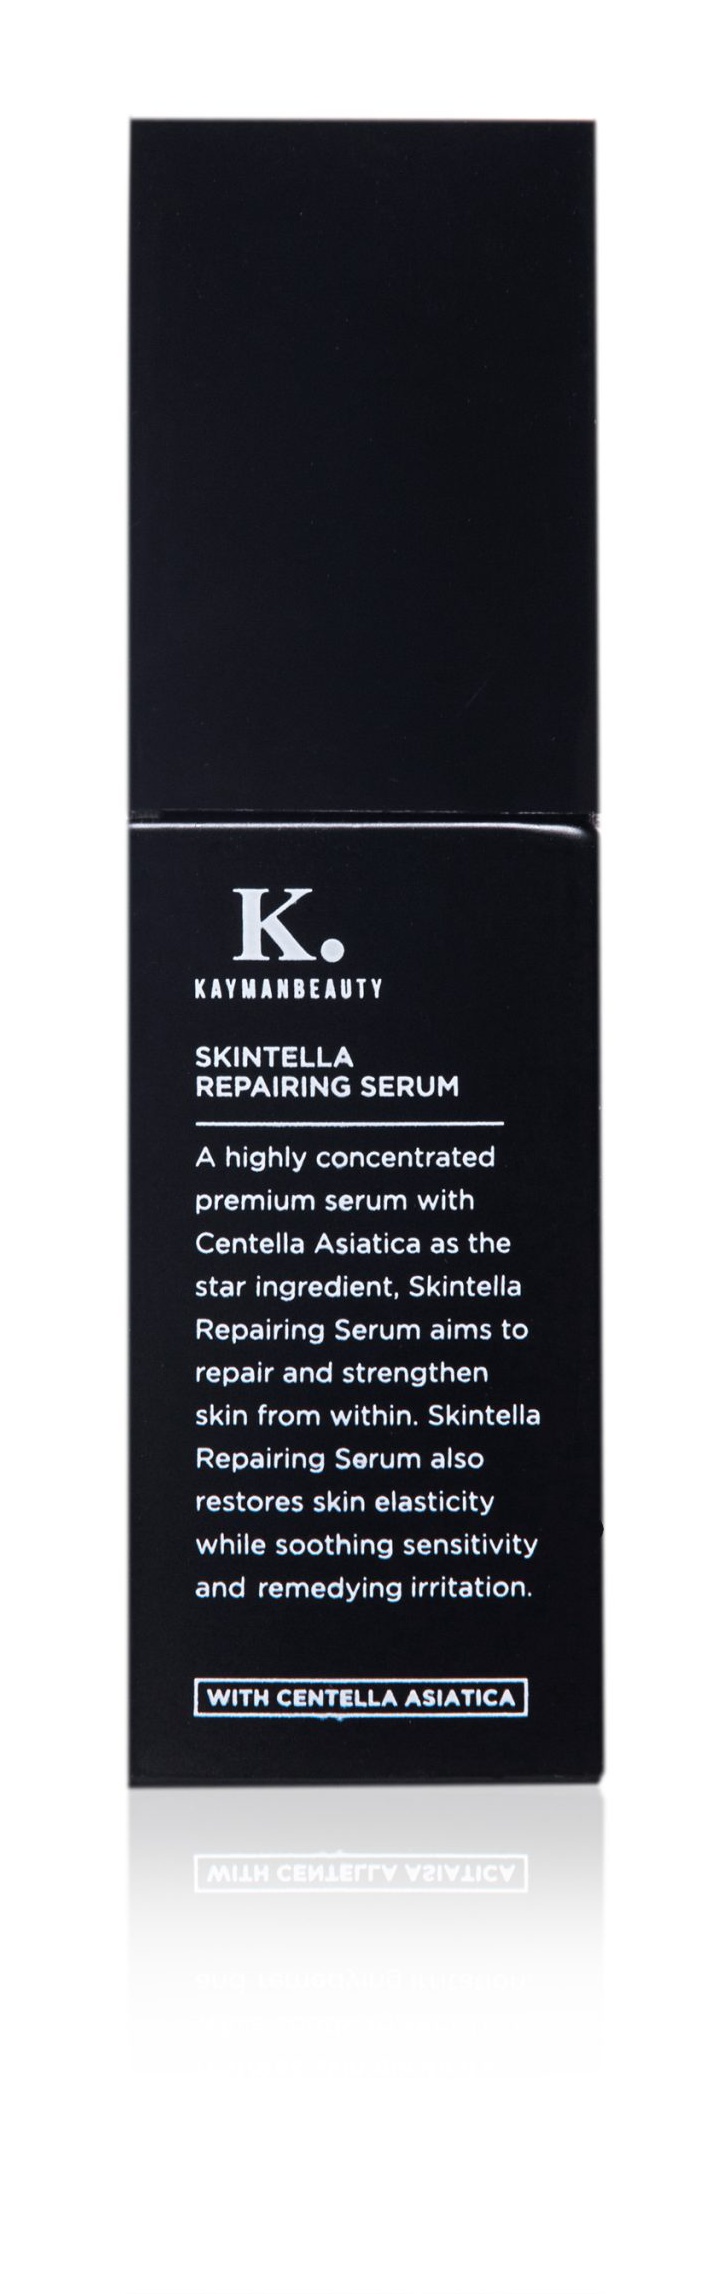 Kayman Beauty Skintella Repairing Serum ingredients (Explained)